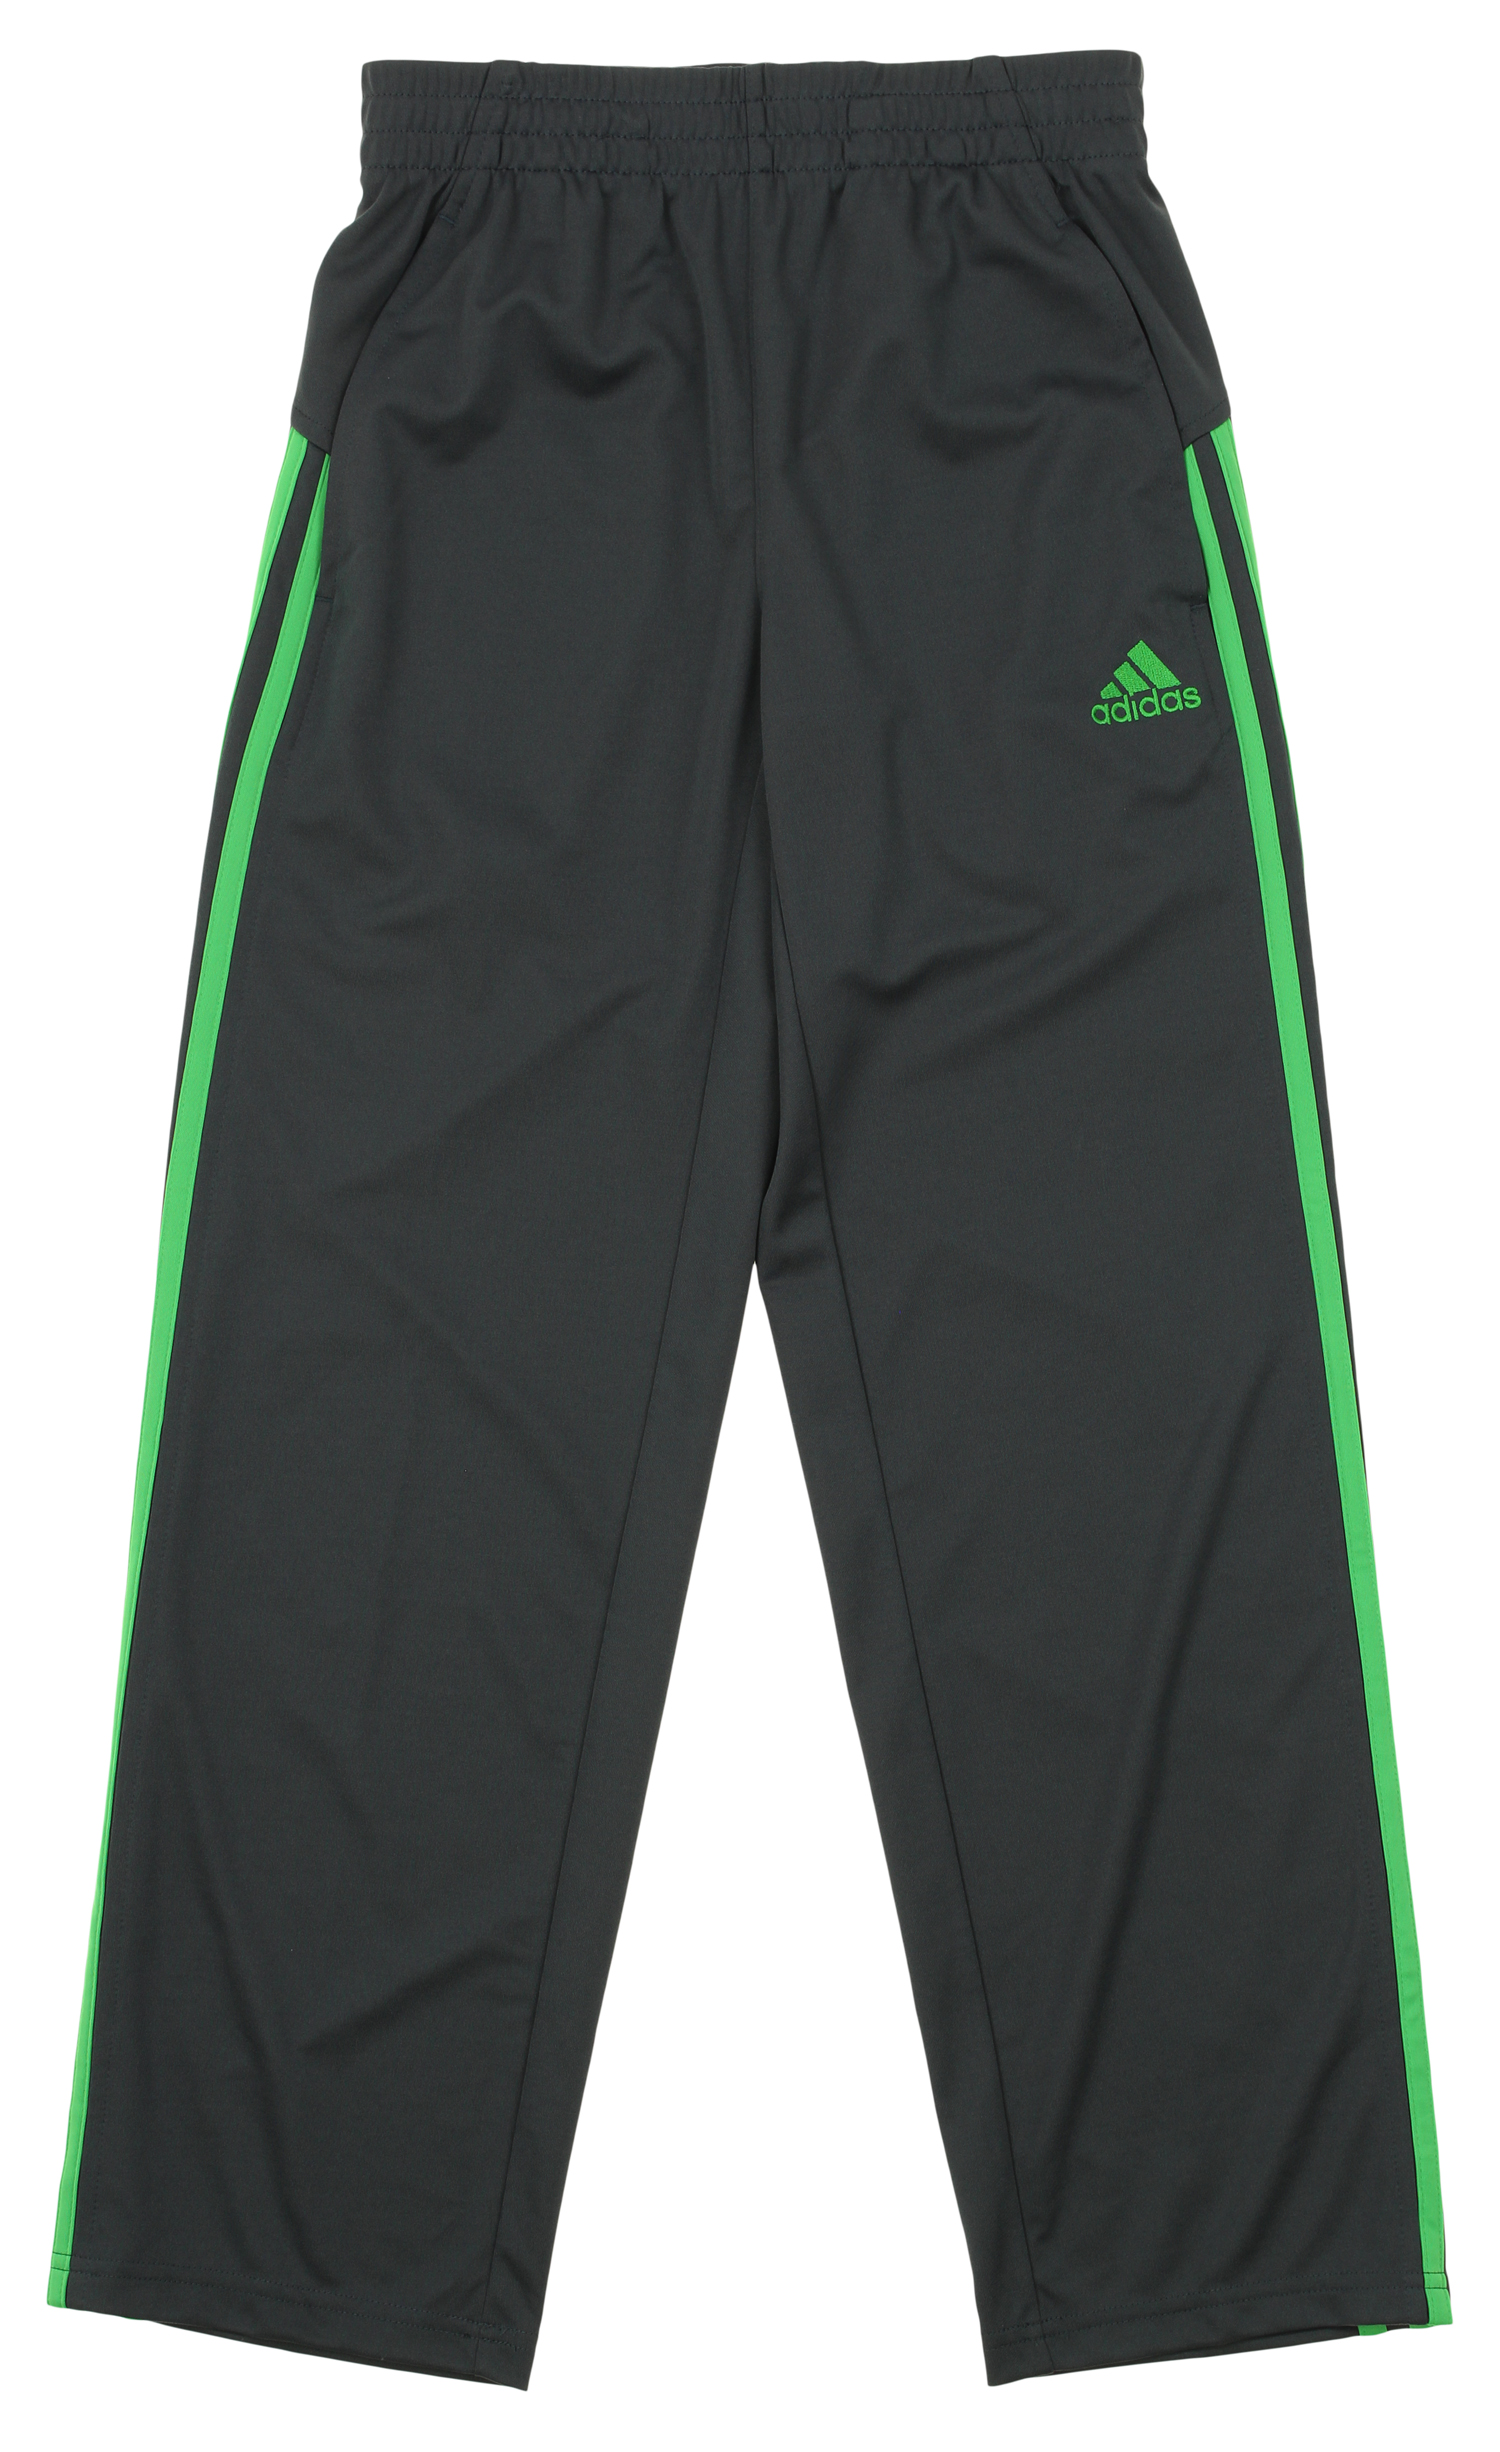 adidas lime green pants